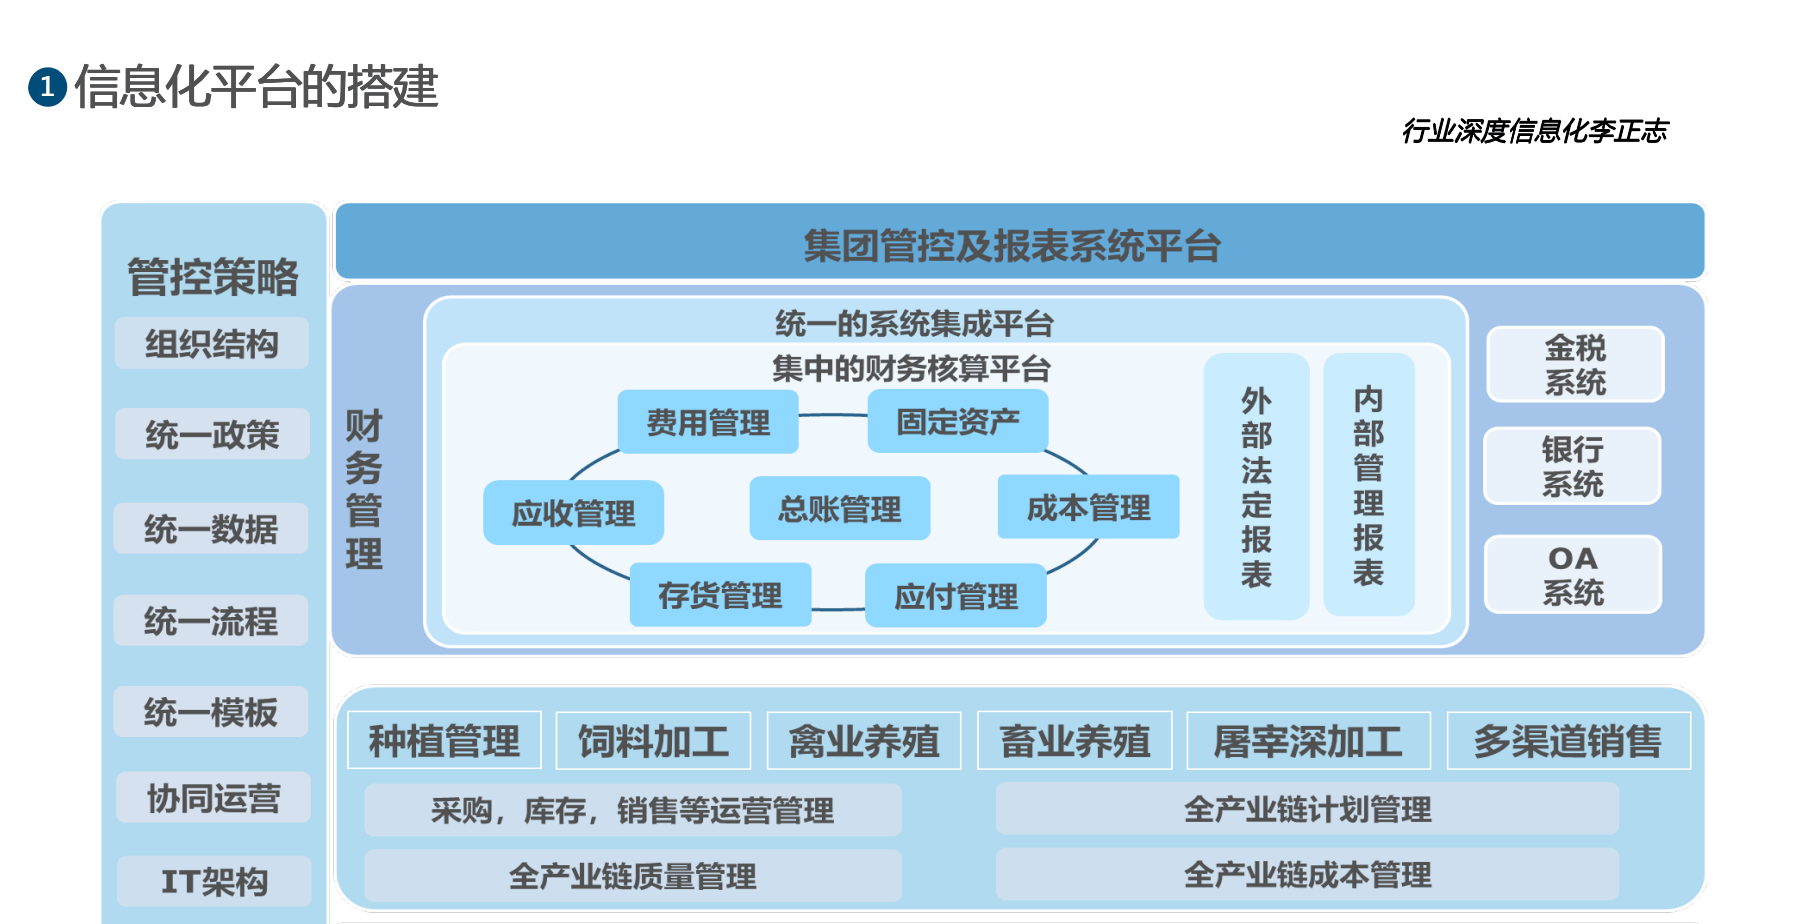 宝运莱官网华夏农牧行业讯息化结构-天主视角数字化运营(图5)